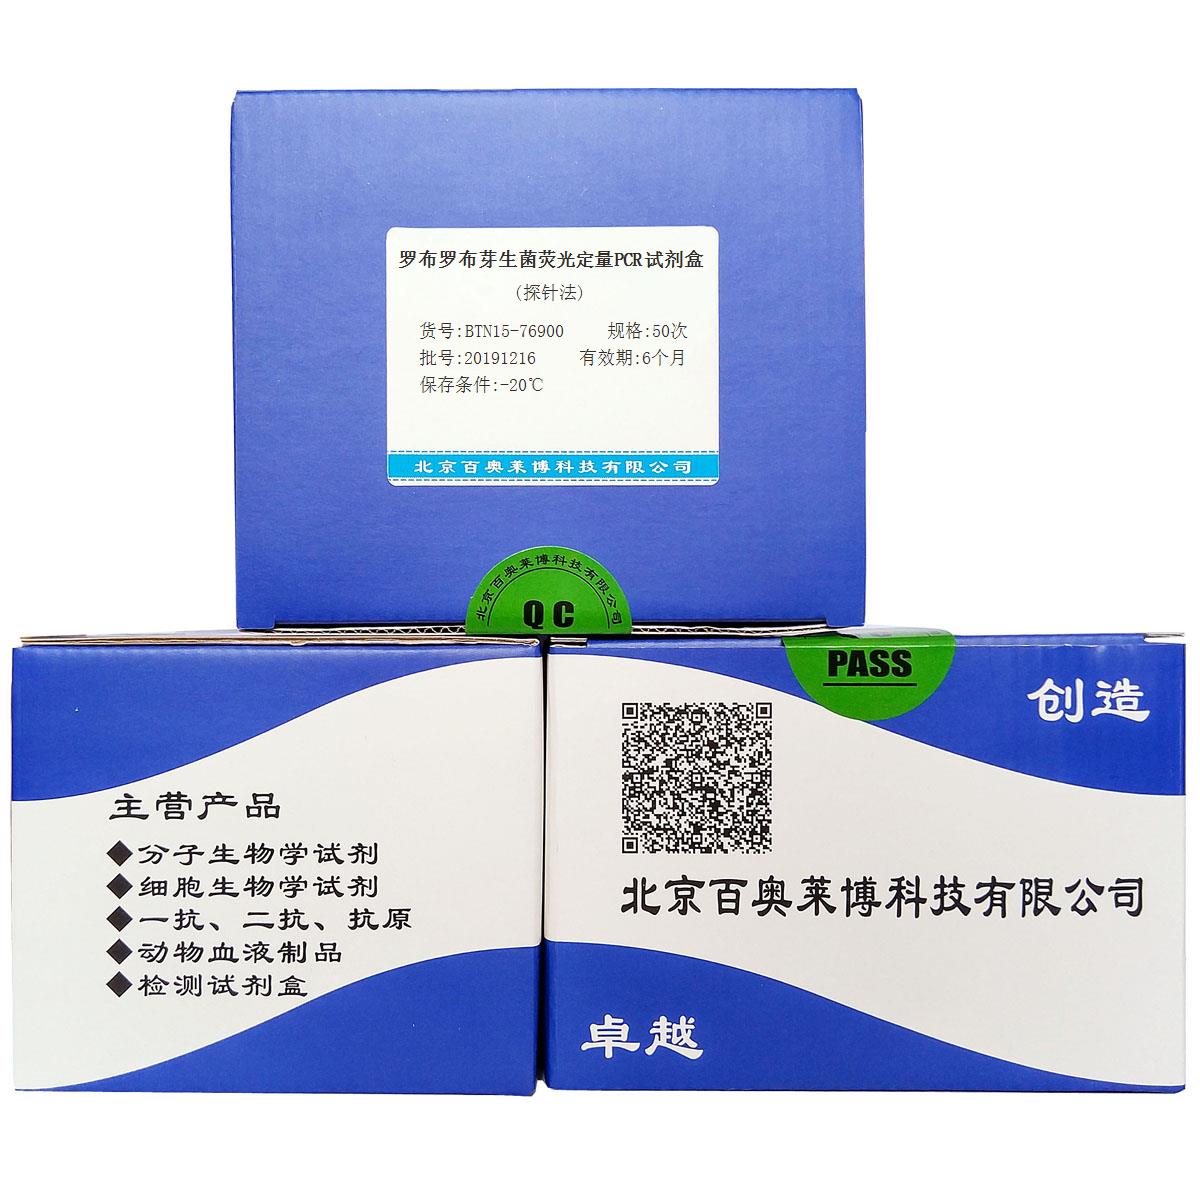 罗布罗布芽生菌荧光定量PCR试剂盒(探针法)